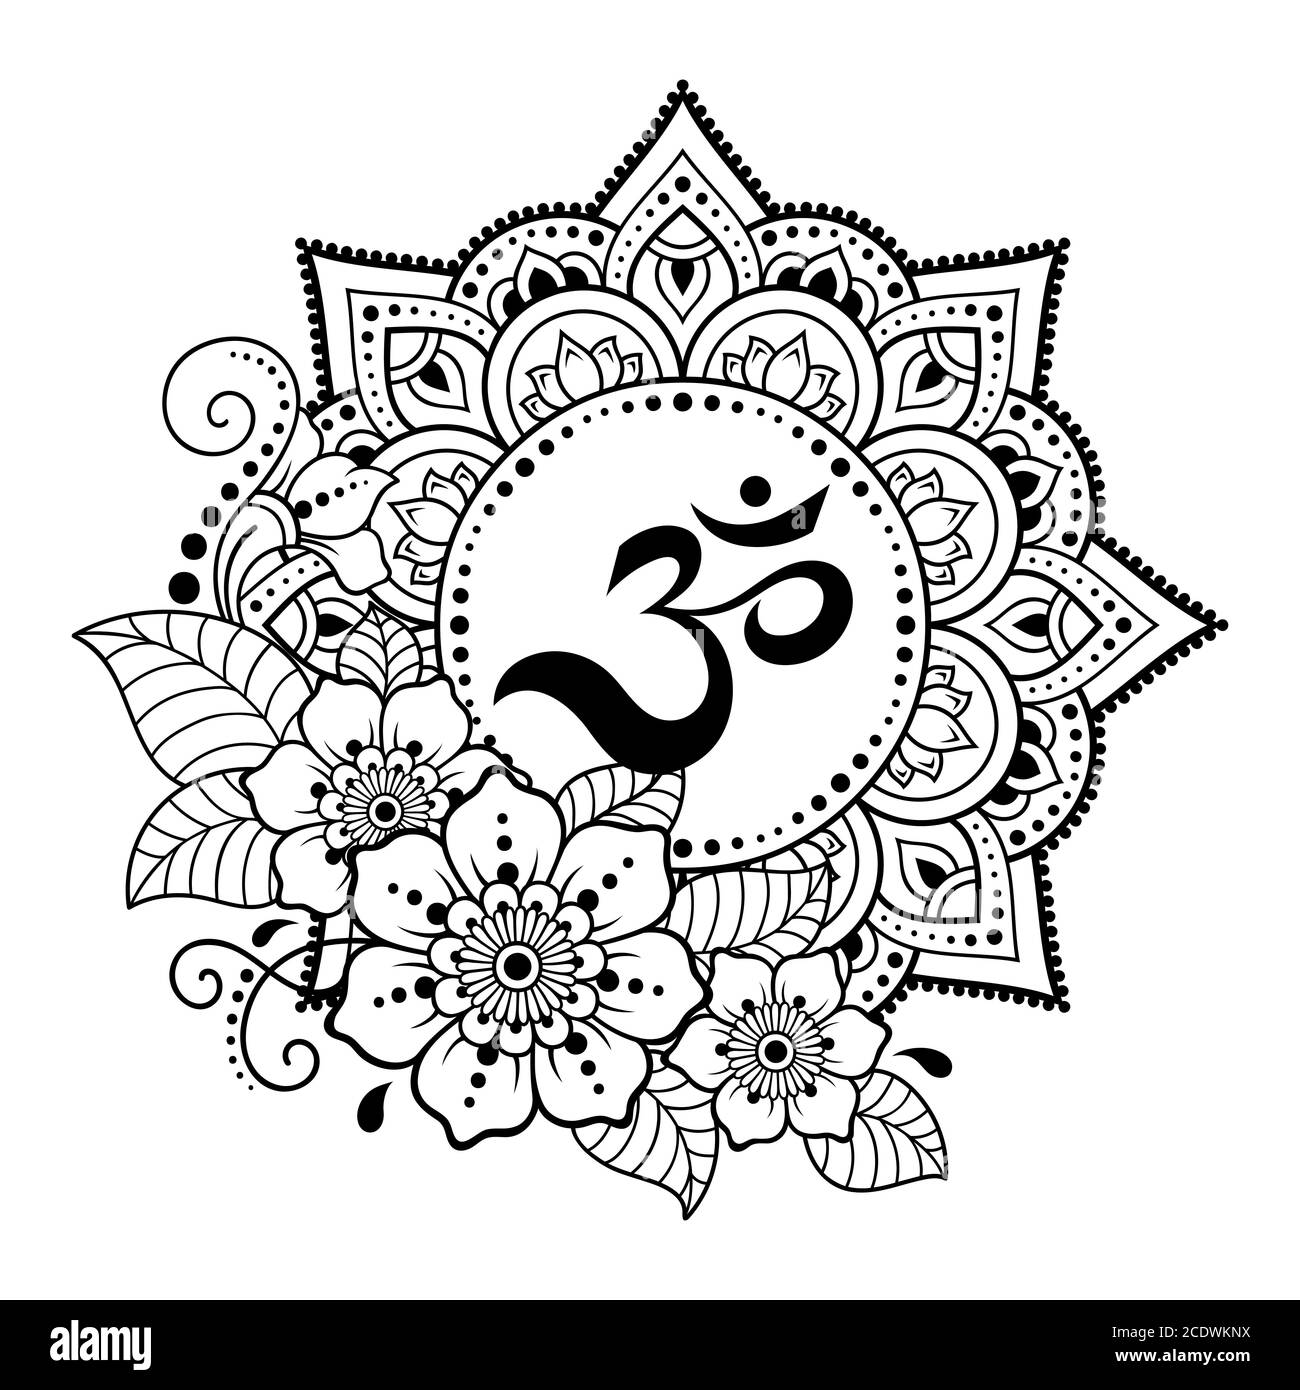 Disegno circolare in forma di mandala per Henna, Mehndi, tatuaggio, decorazione. Ornamento decorativo in stile orientale con antico mantra indù OM. Contorno Illustrazione Vettoriale